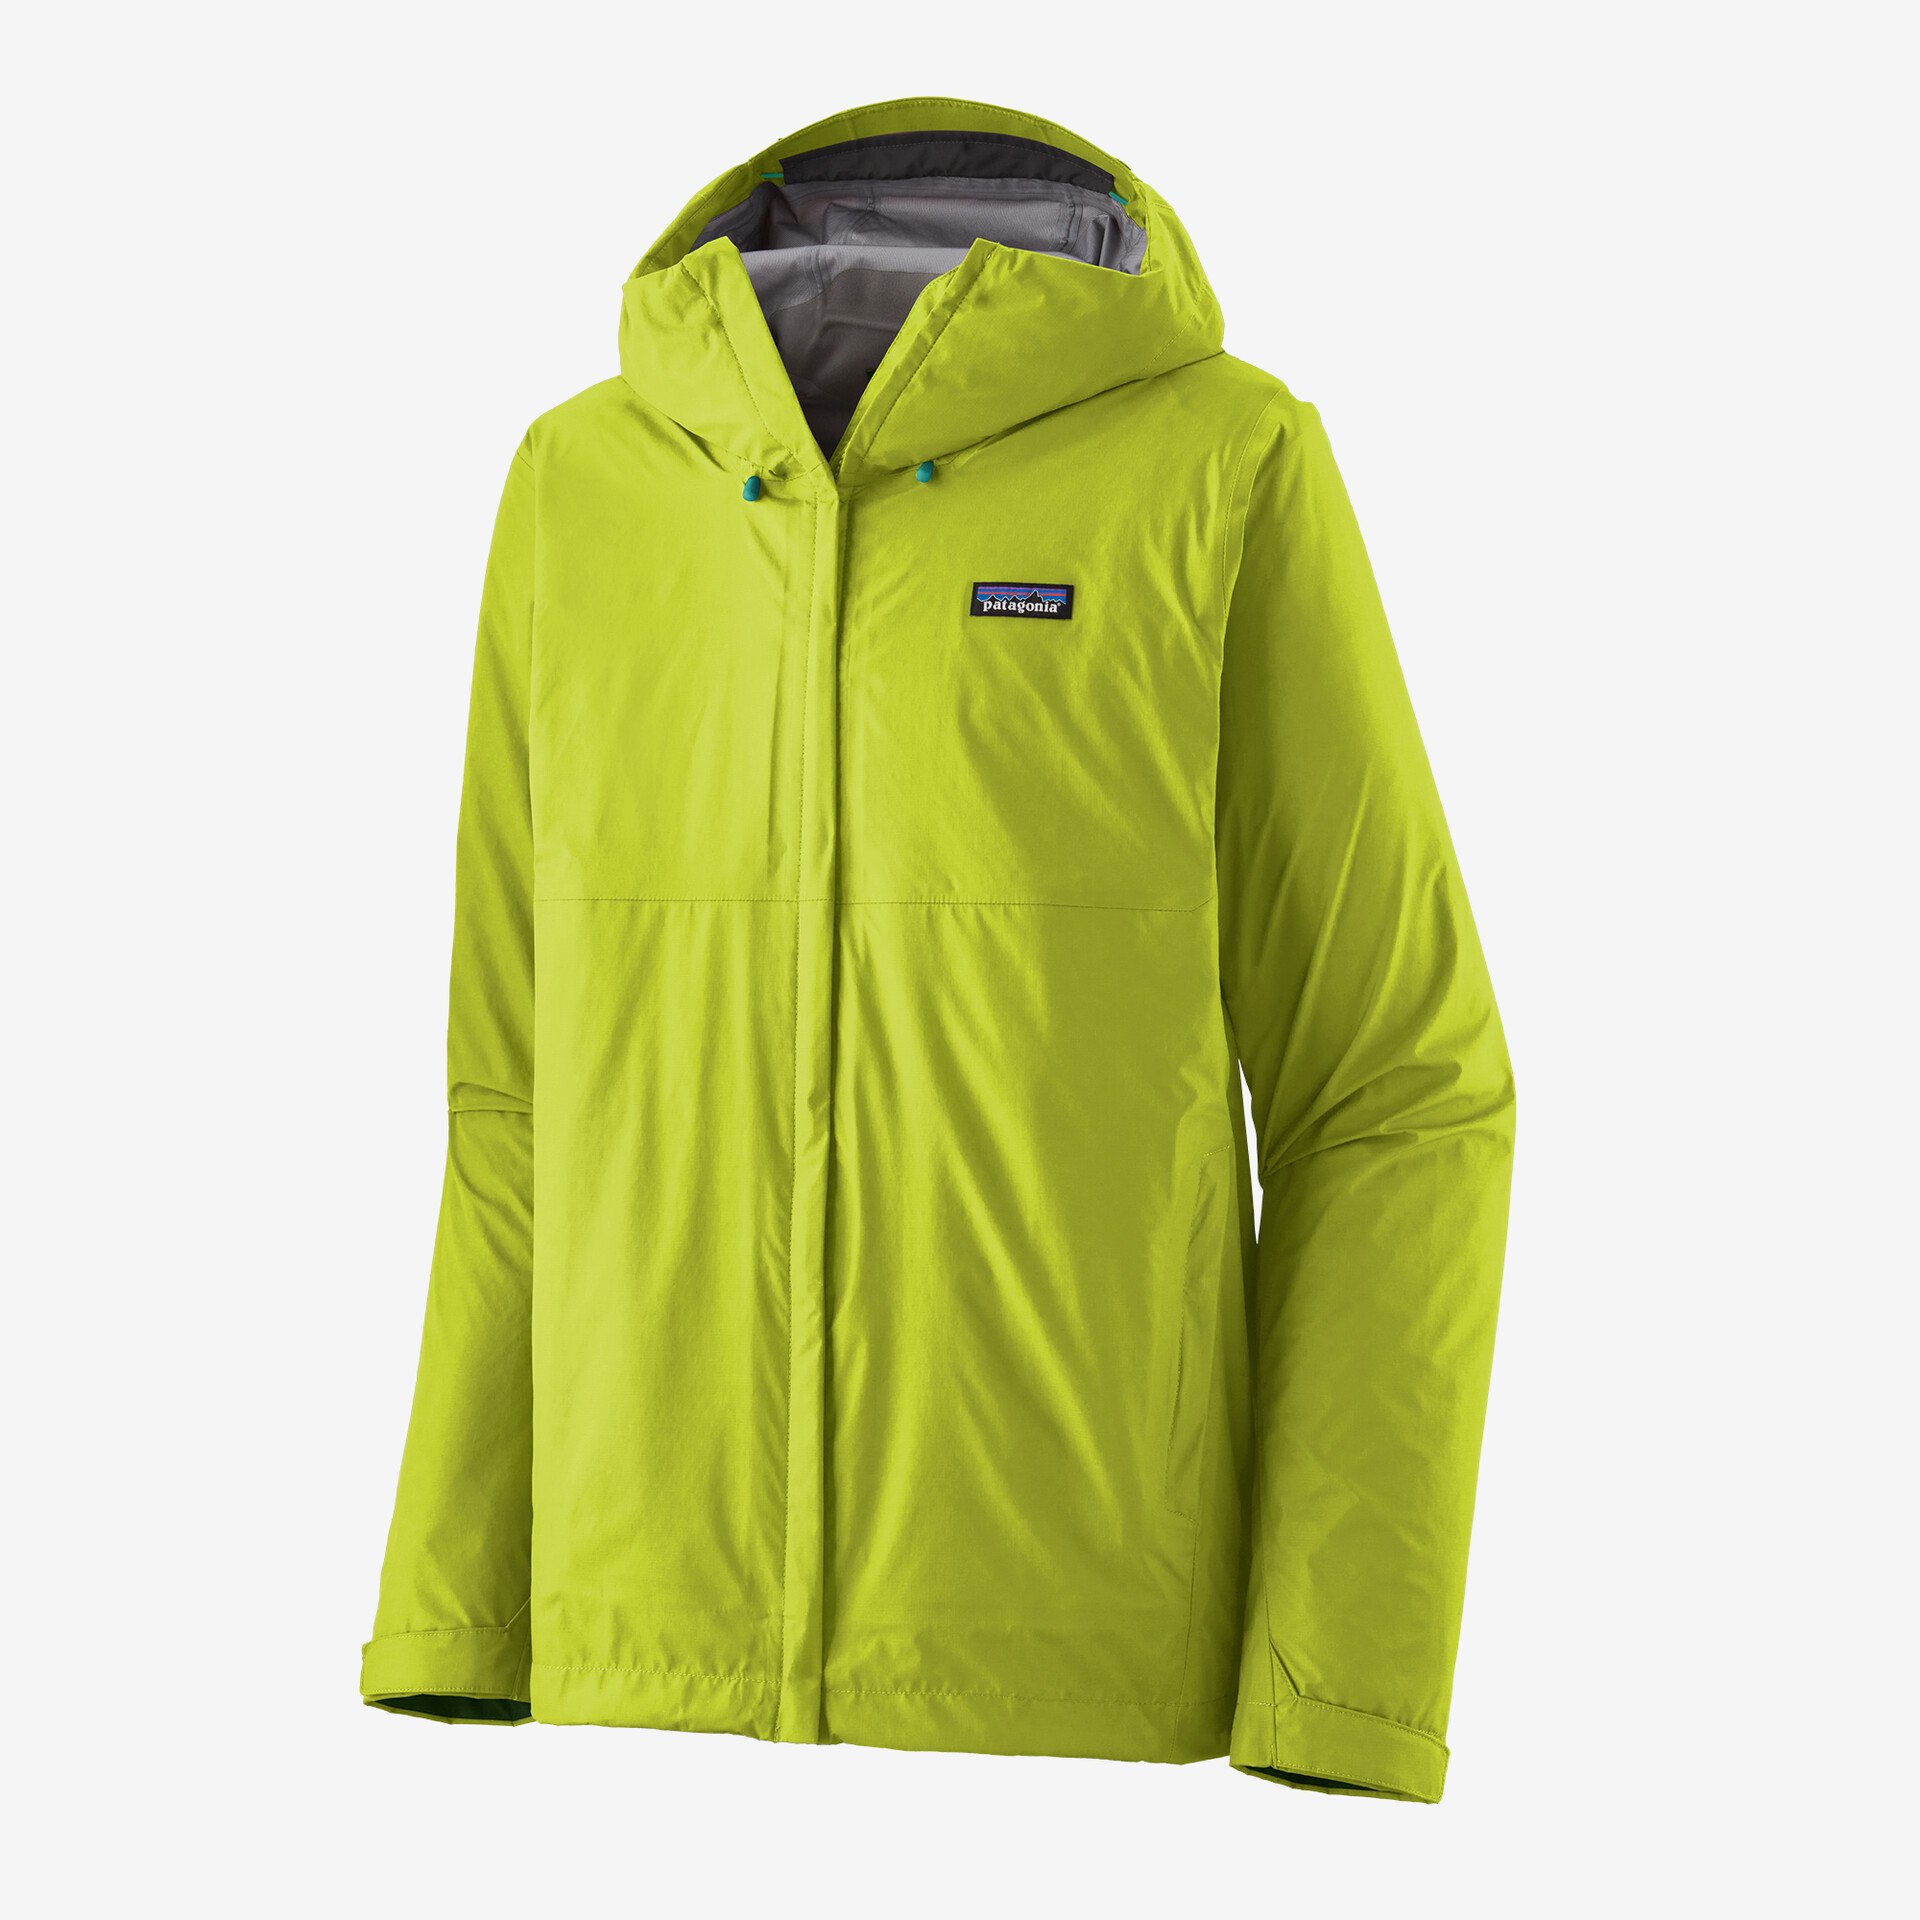 Waterproof Rain Jacket Waterproof Fishing Rain Suit for Women (Rain Gear  Jacket & Trouser Suit), Lightweight Raincoat Windproof Breathable Rainwear